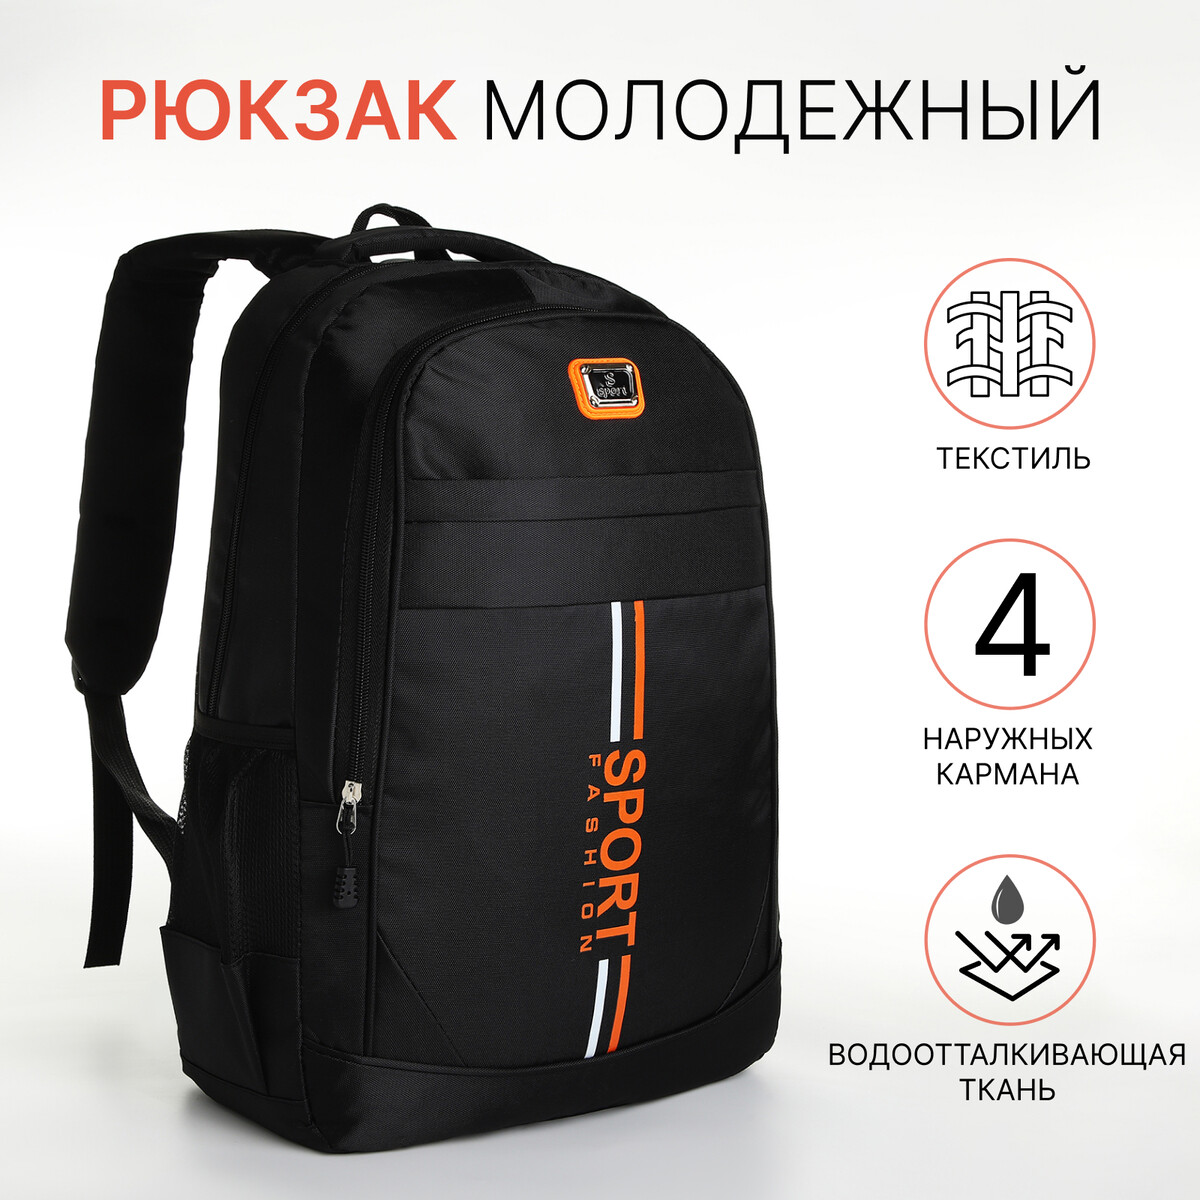 Рюкзак молодежный на молнии, 4 кармана, цвет черный/оранжевый рюкзак ninetygo urban daily backpack оранжевый